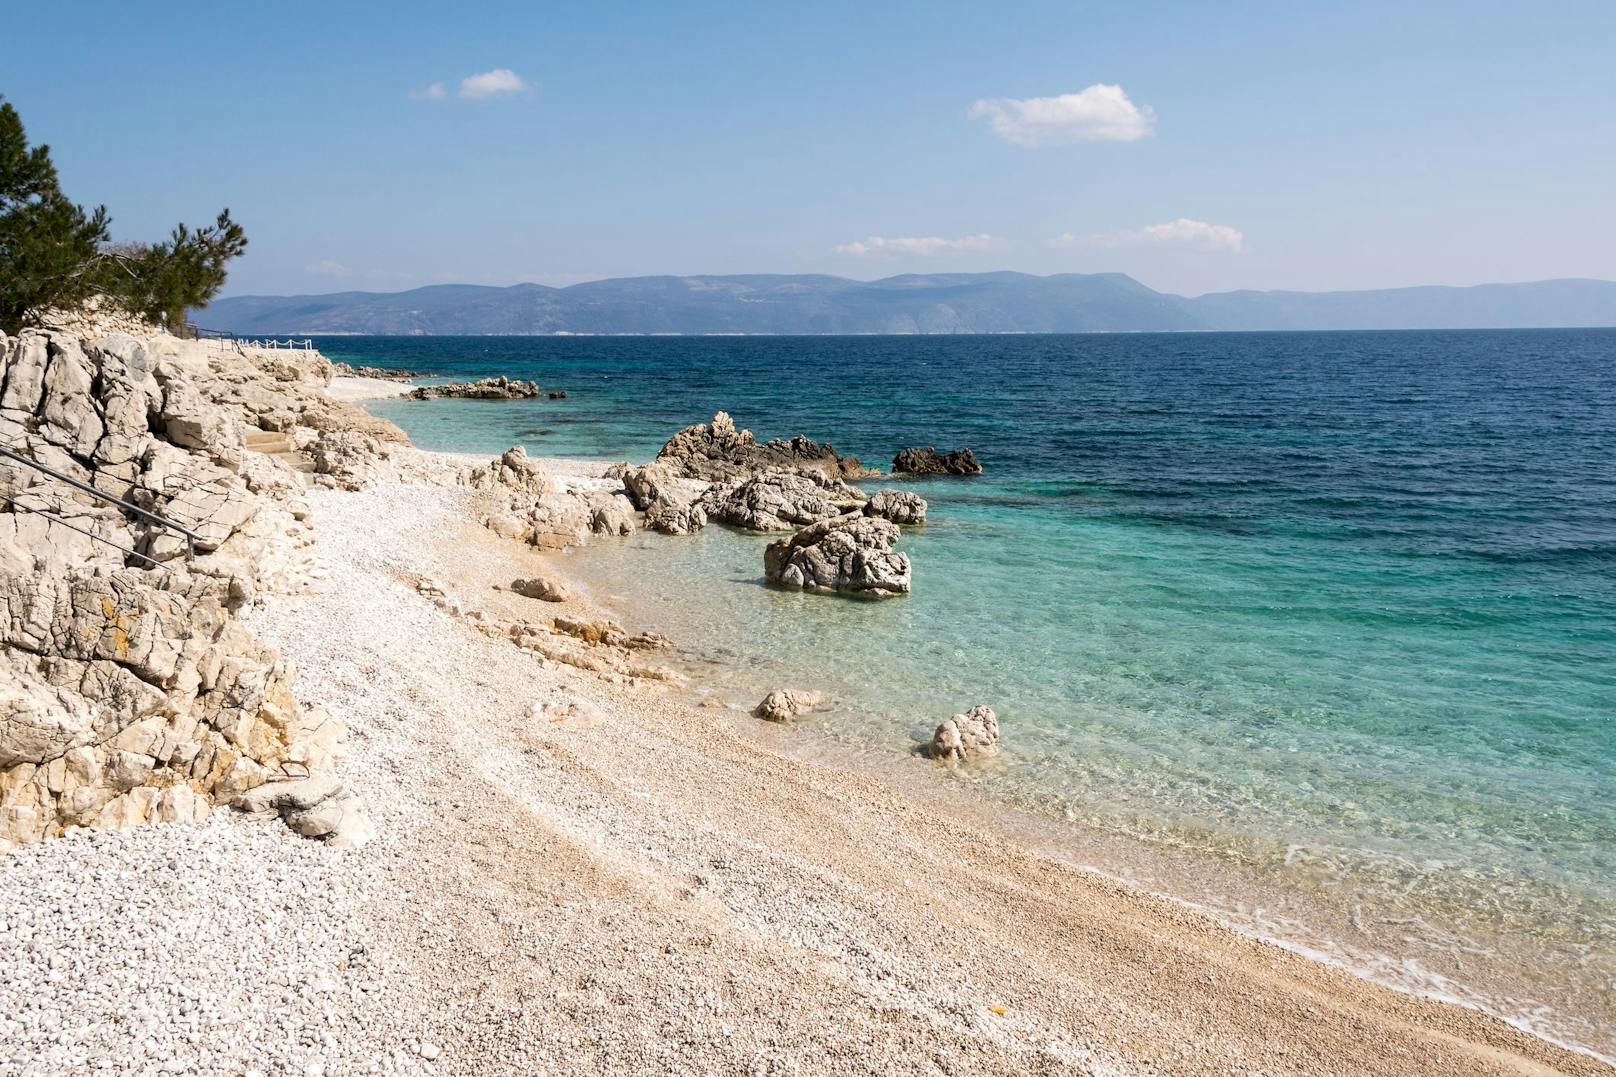 Die Region <strong>Rabac </strong>hat wohl einen der schönsten Strände von Kroatien. In der "<strong>Bounty Bay</strong>" seid ihr nahezu ungestört und könnt am wunderschönen Kiesel/Sandstrand ins kristallblaue Wasser laufen. <br>